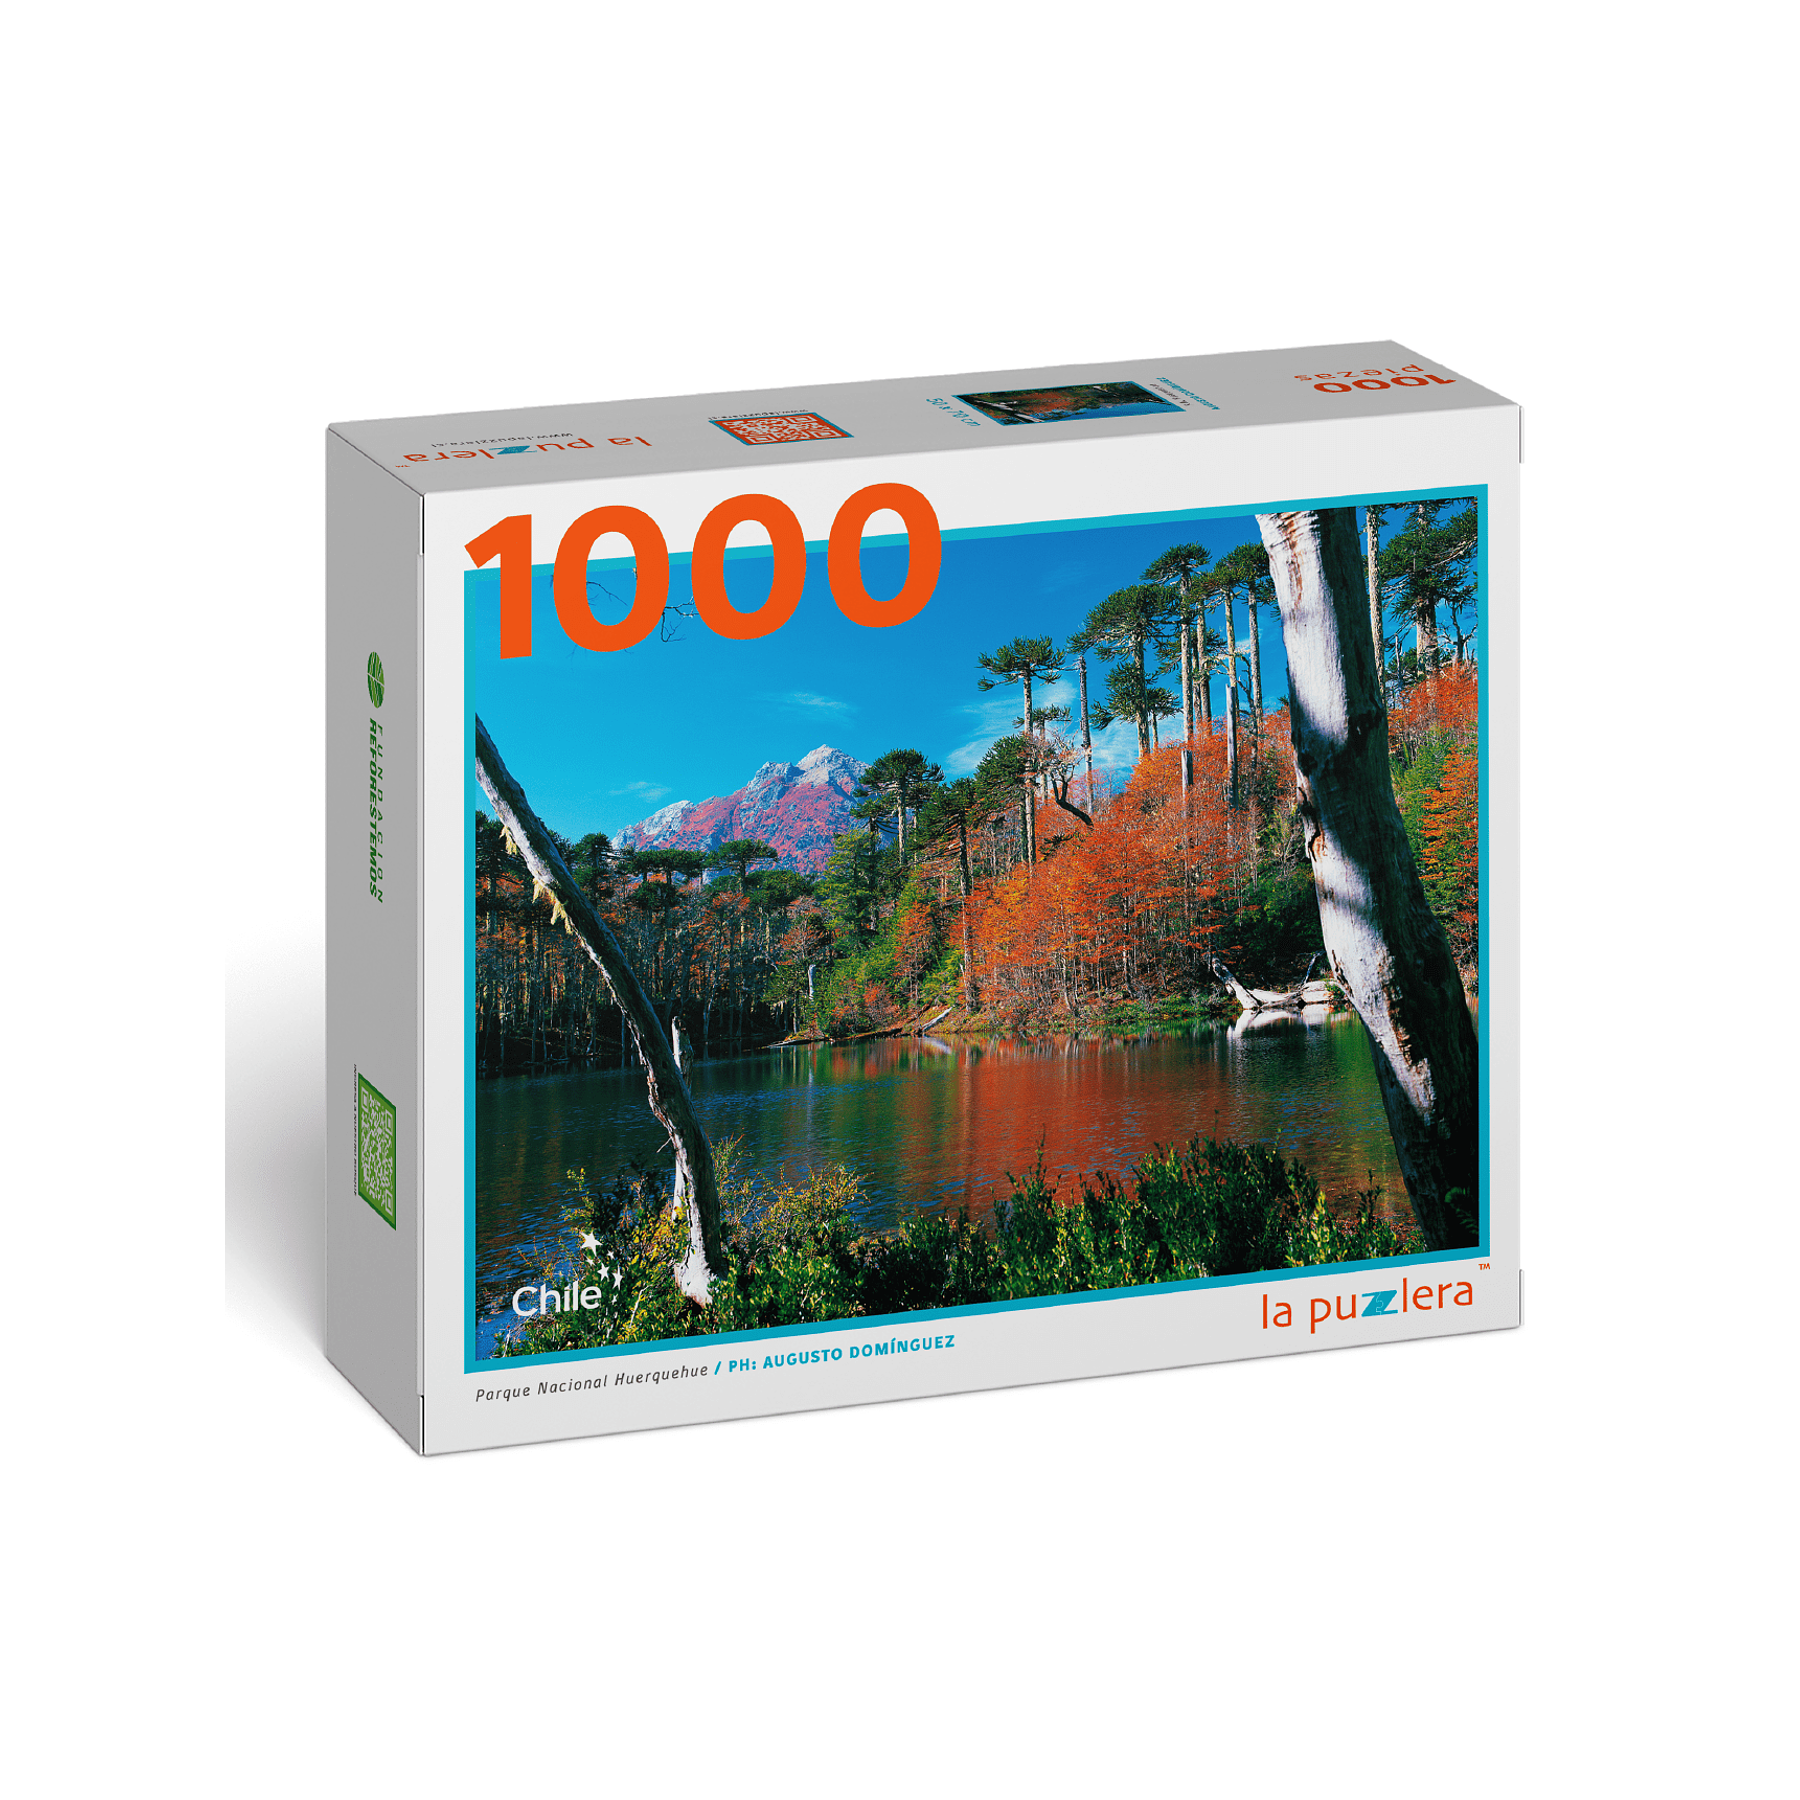 Puzzle Parque Nacional Huerquehue (Otoño) 1000 Piezas